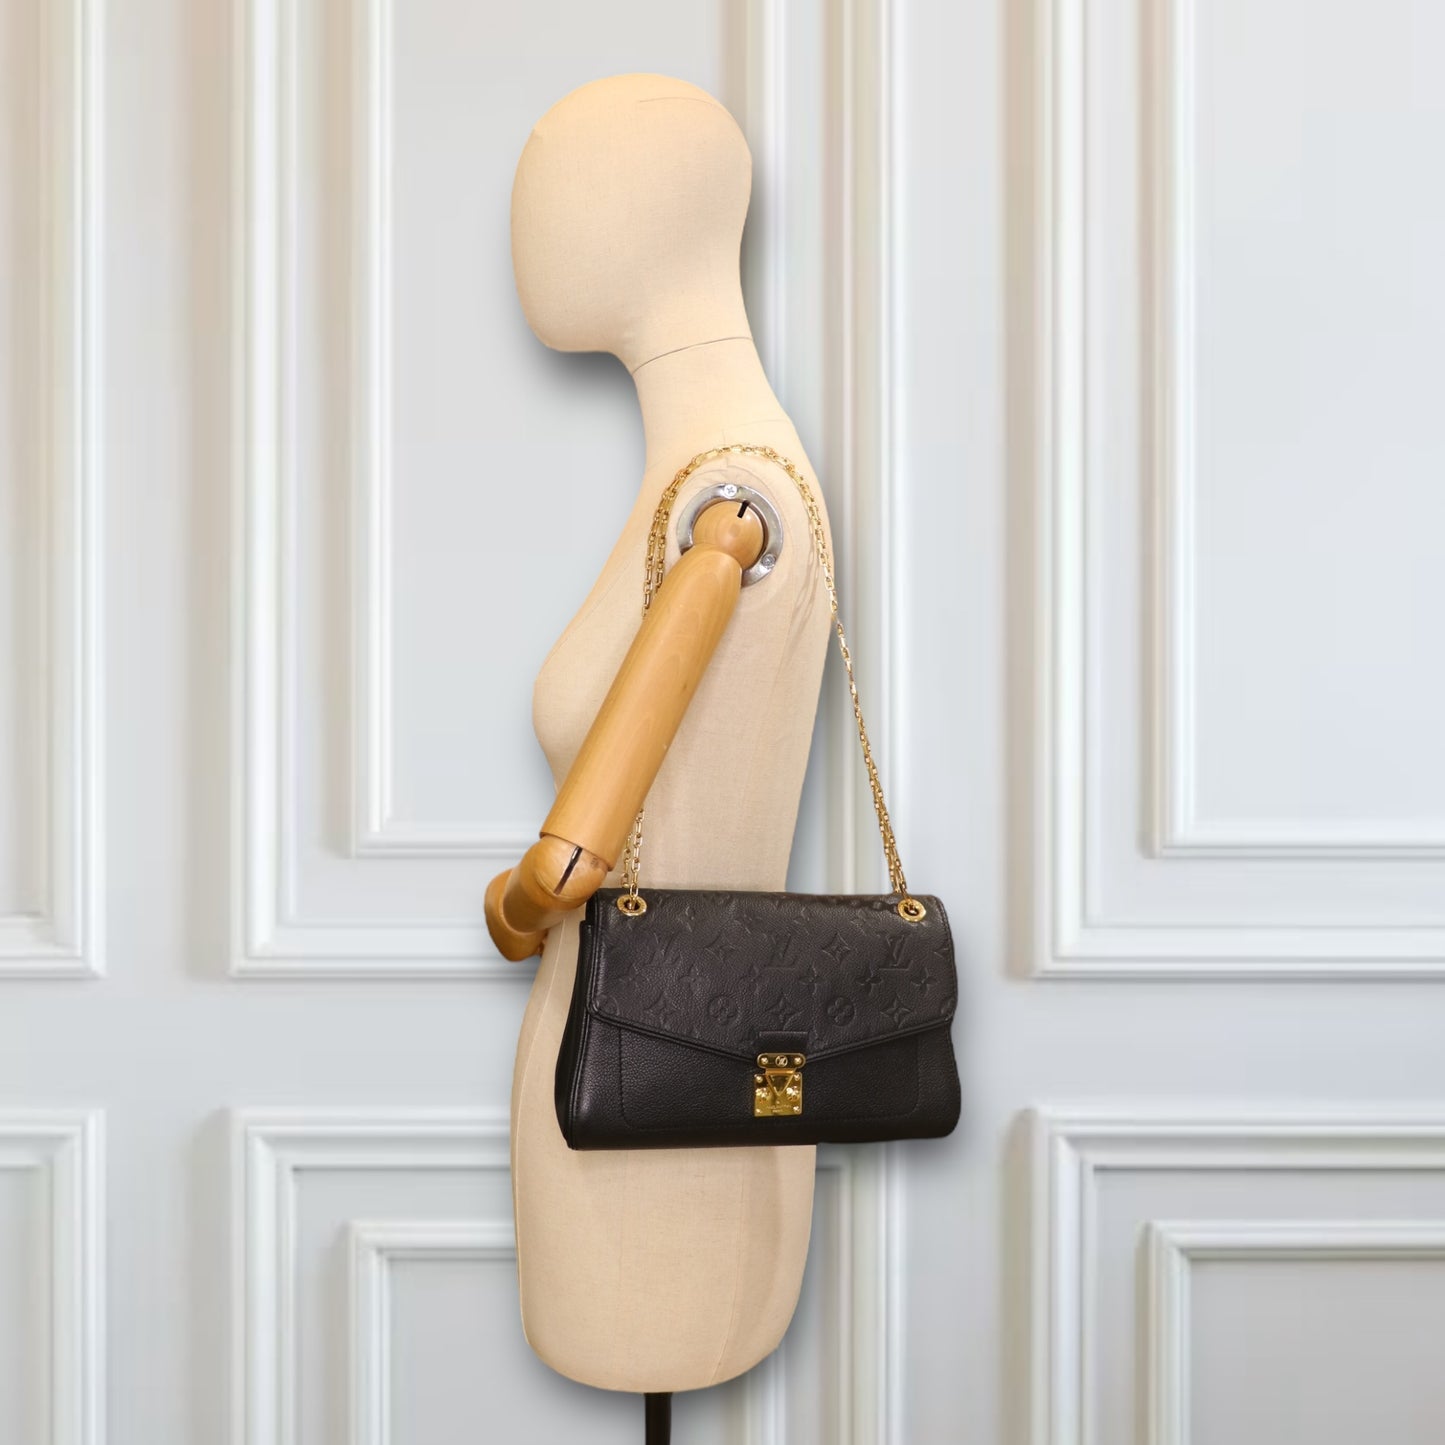 Louis Vuitton Saint Germain PM empreinte schwarz